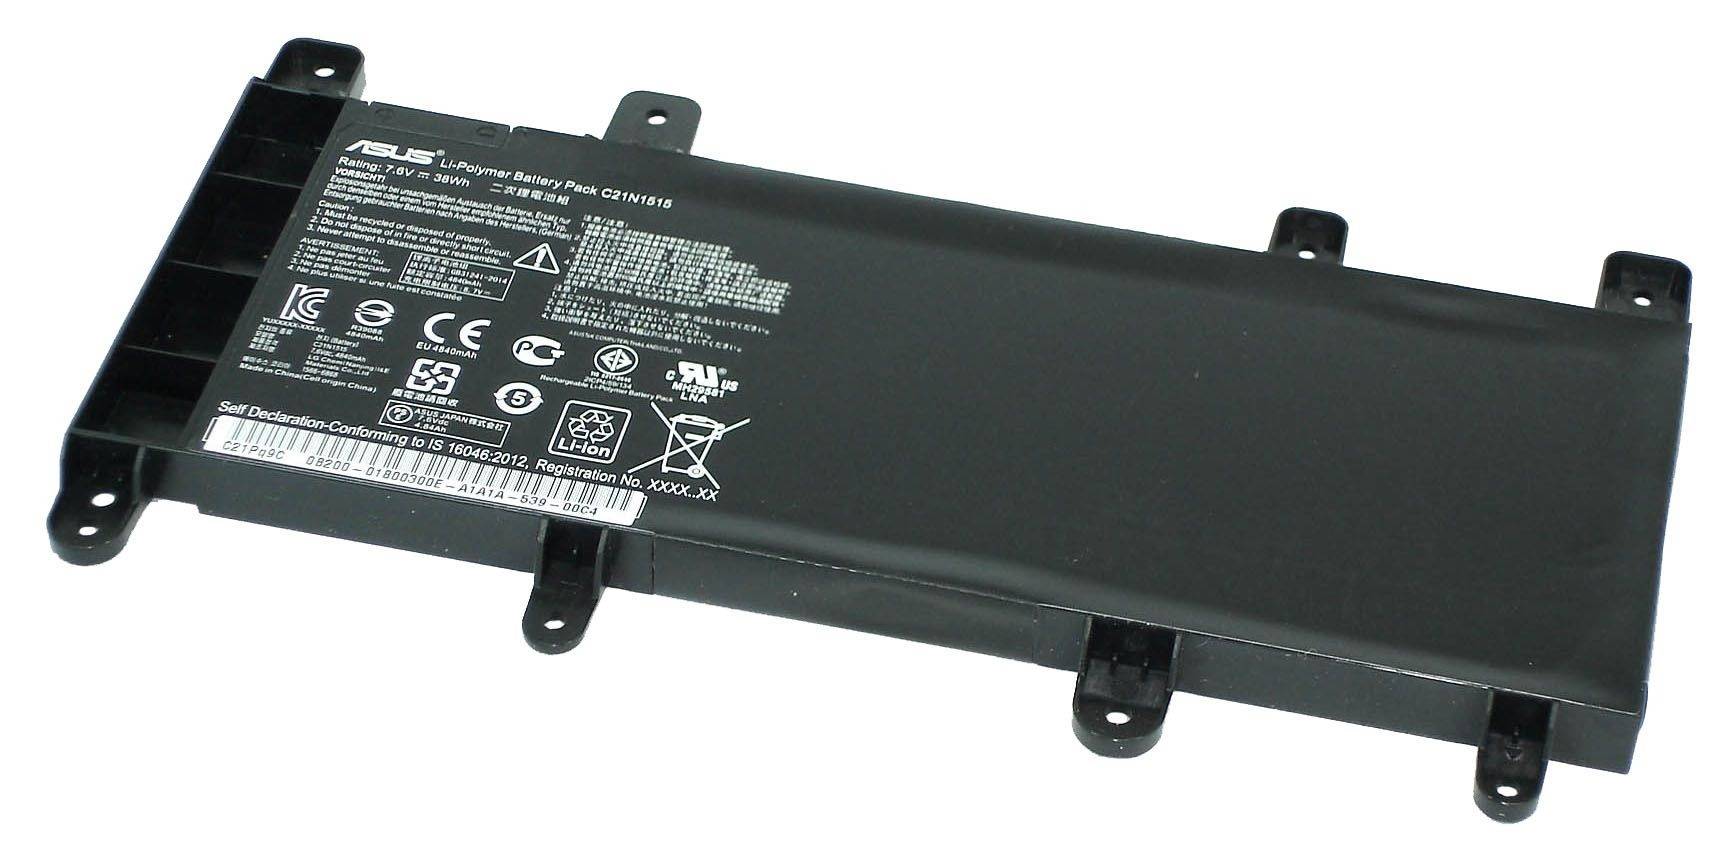 Аккумуляторная батарея ASUS C21N1515 оригинальный для Asus F756 / X756 / R756 X756UA / X756UQ / X756UV, 7.6V, 38Wh, черный, техническая упаковка (C21N1515-SP)